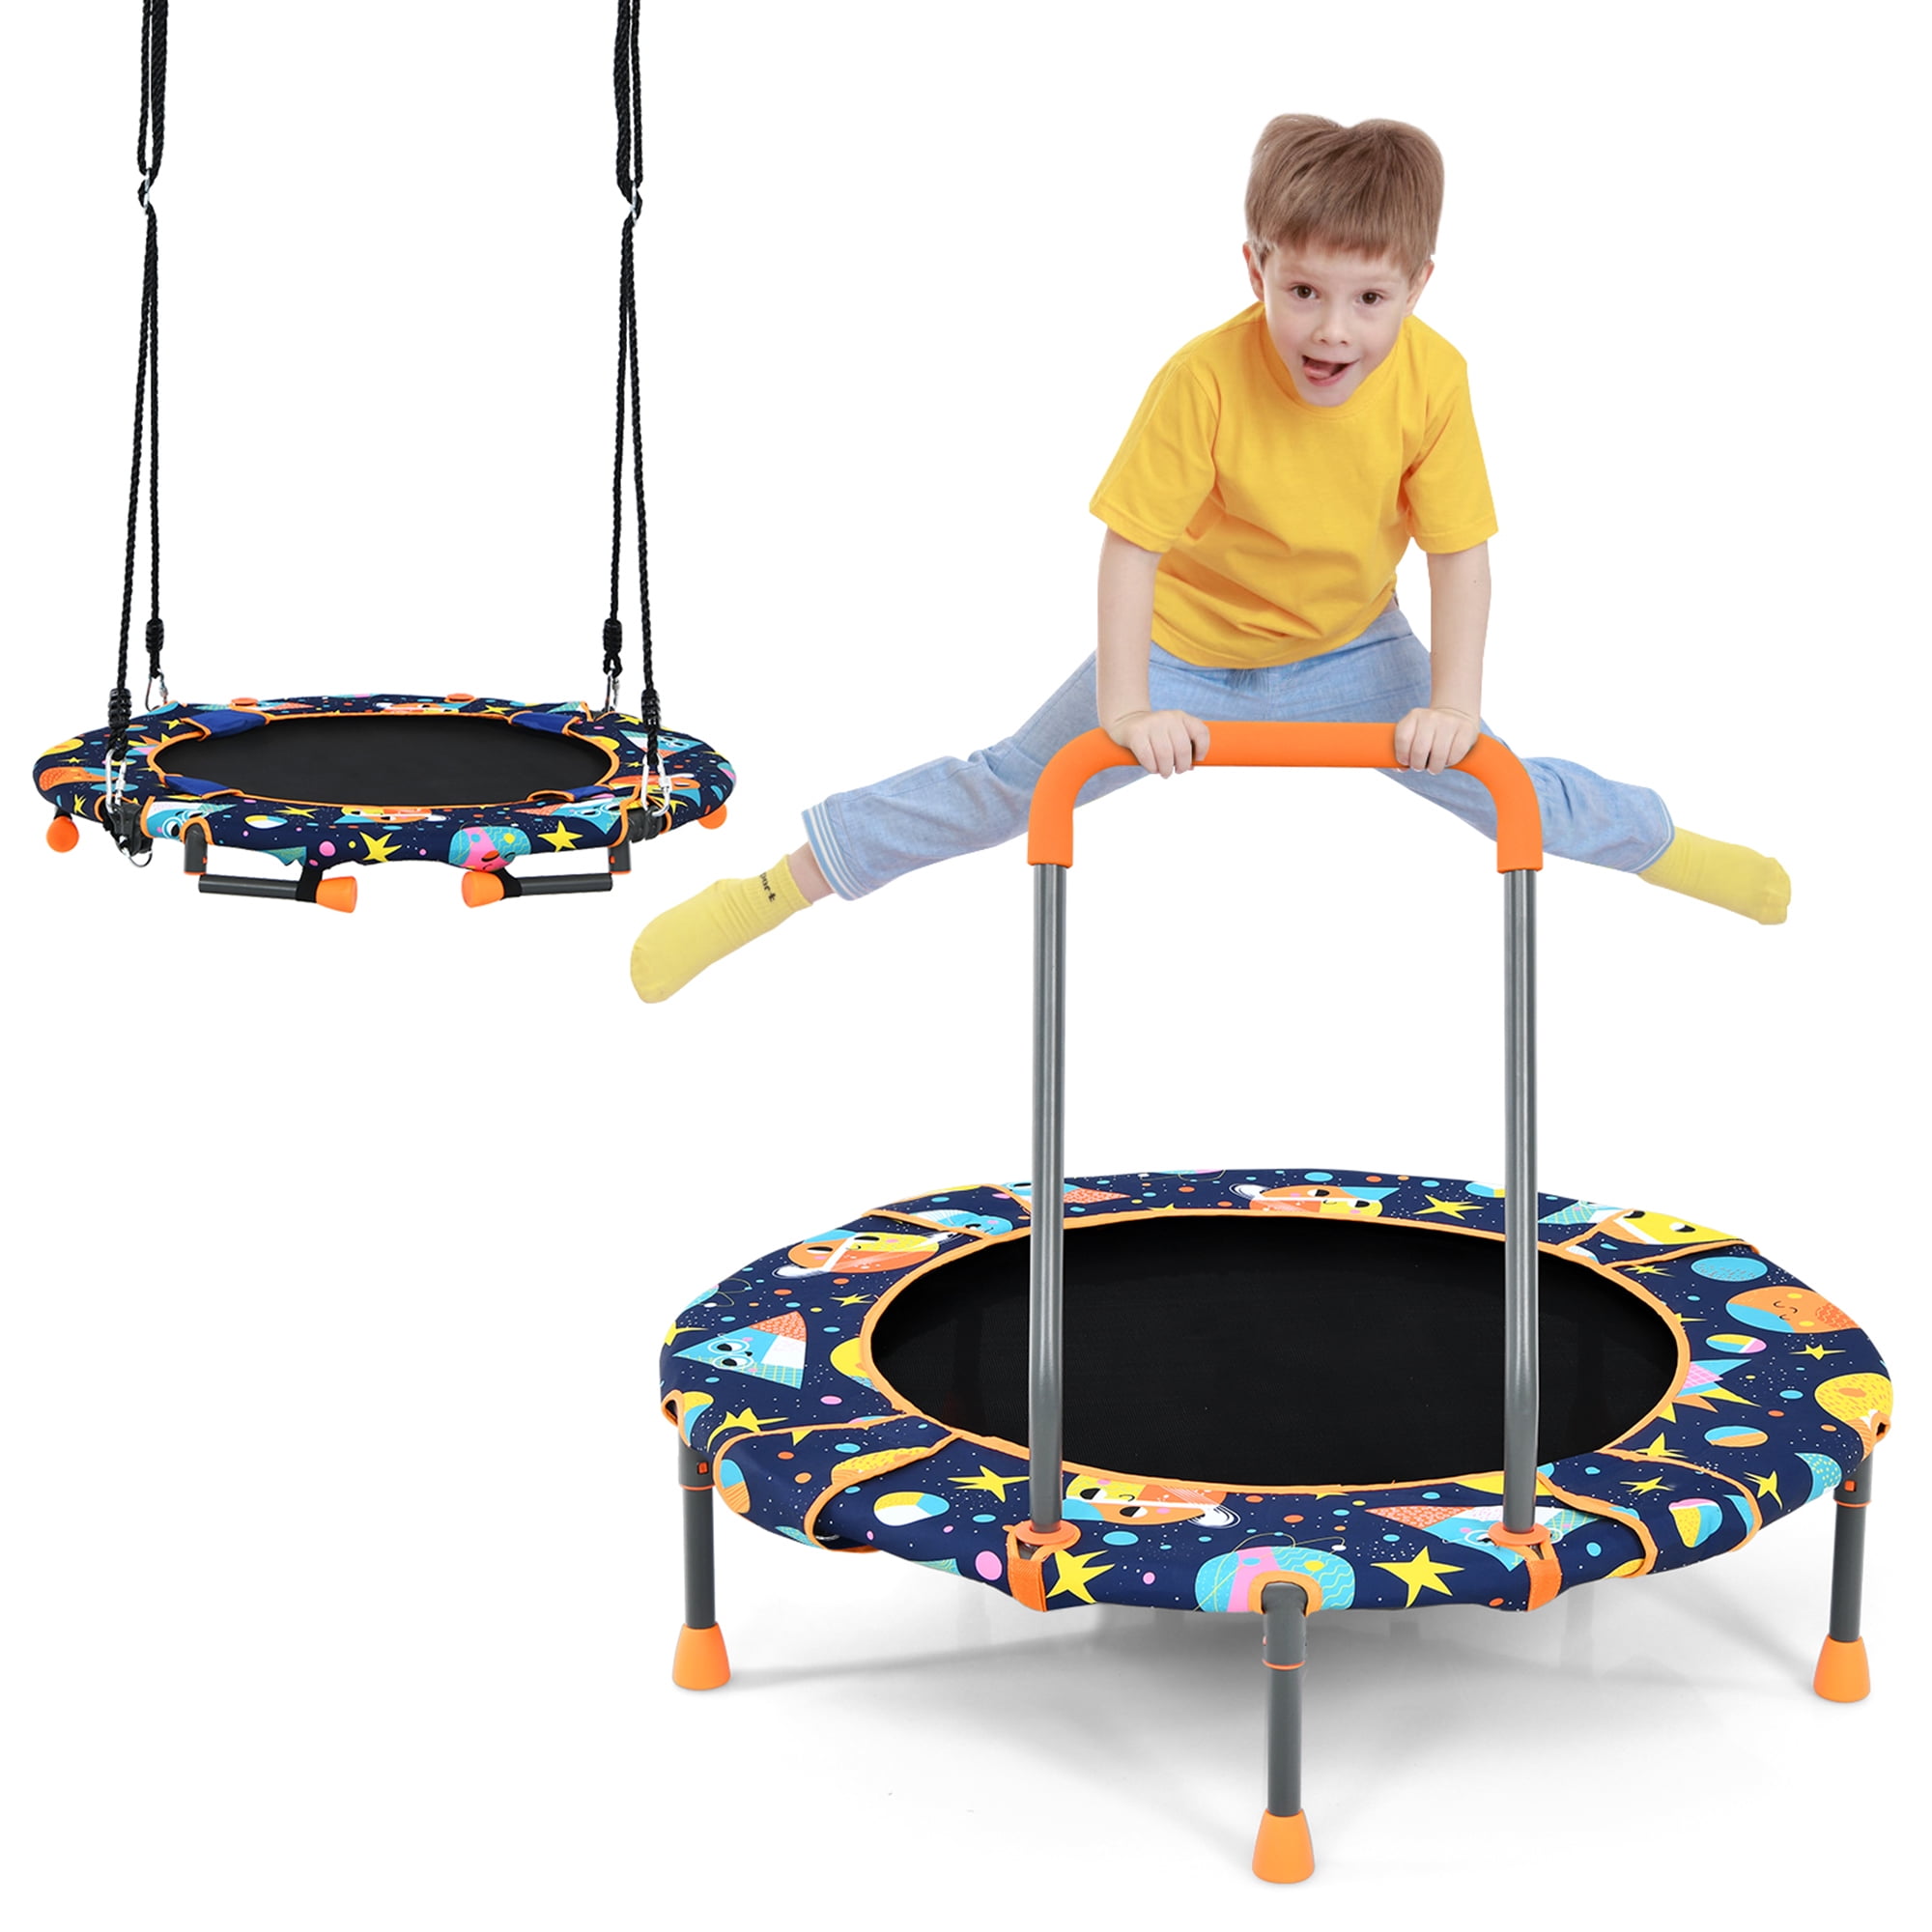 Nieuwe aankomst Verwaand verbinding verbroken Gymax 2-in-1 Trampoline & Swing Combo Foldable Rebounder for Kids w/ Sturdy  Ropes - Walmart.com